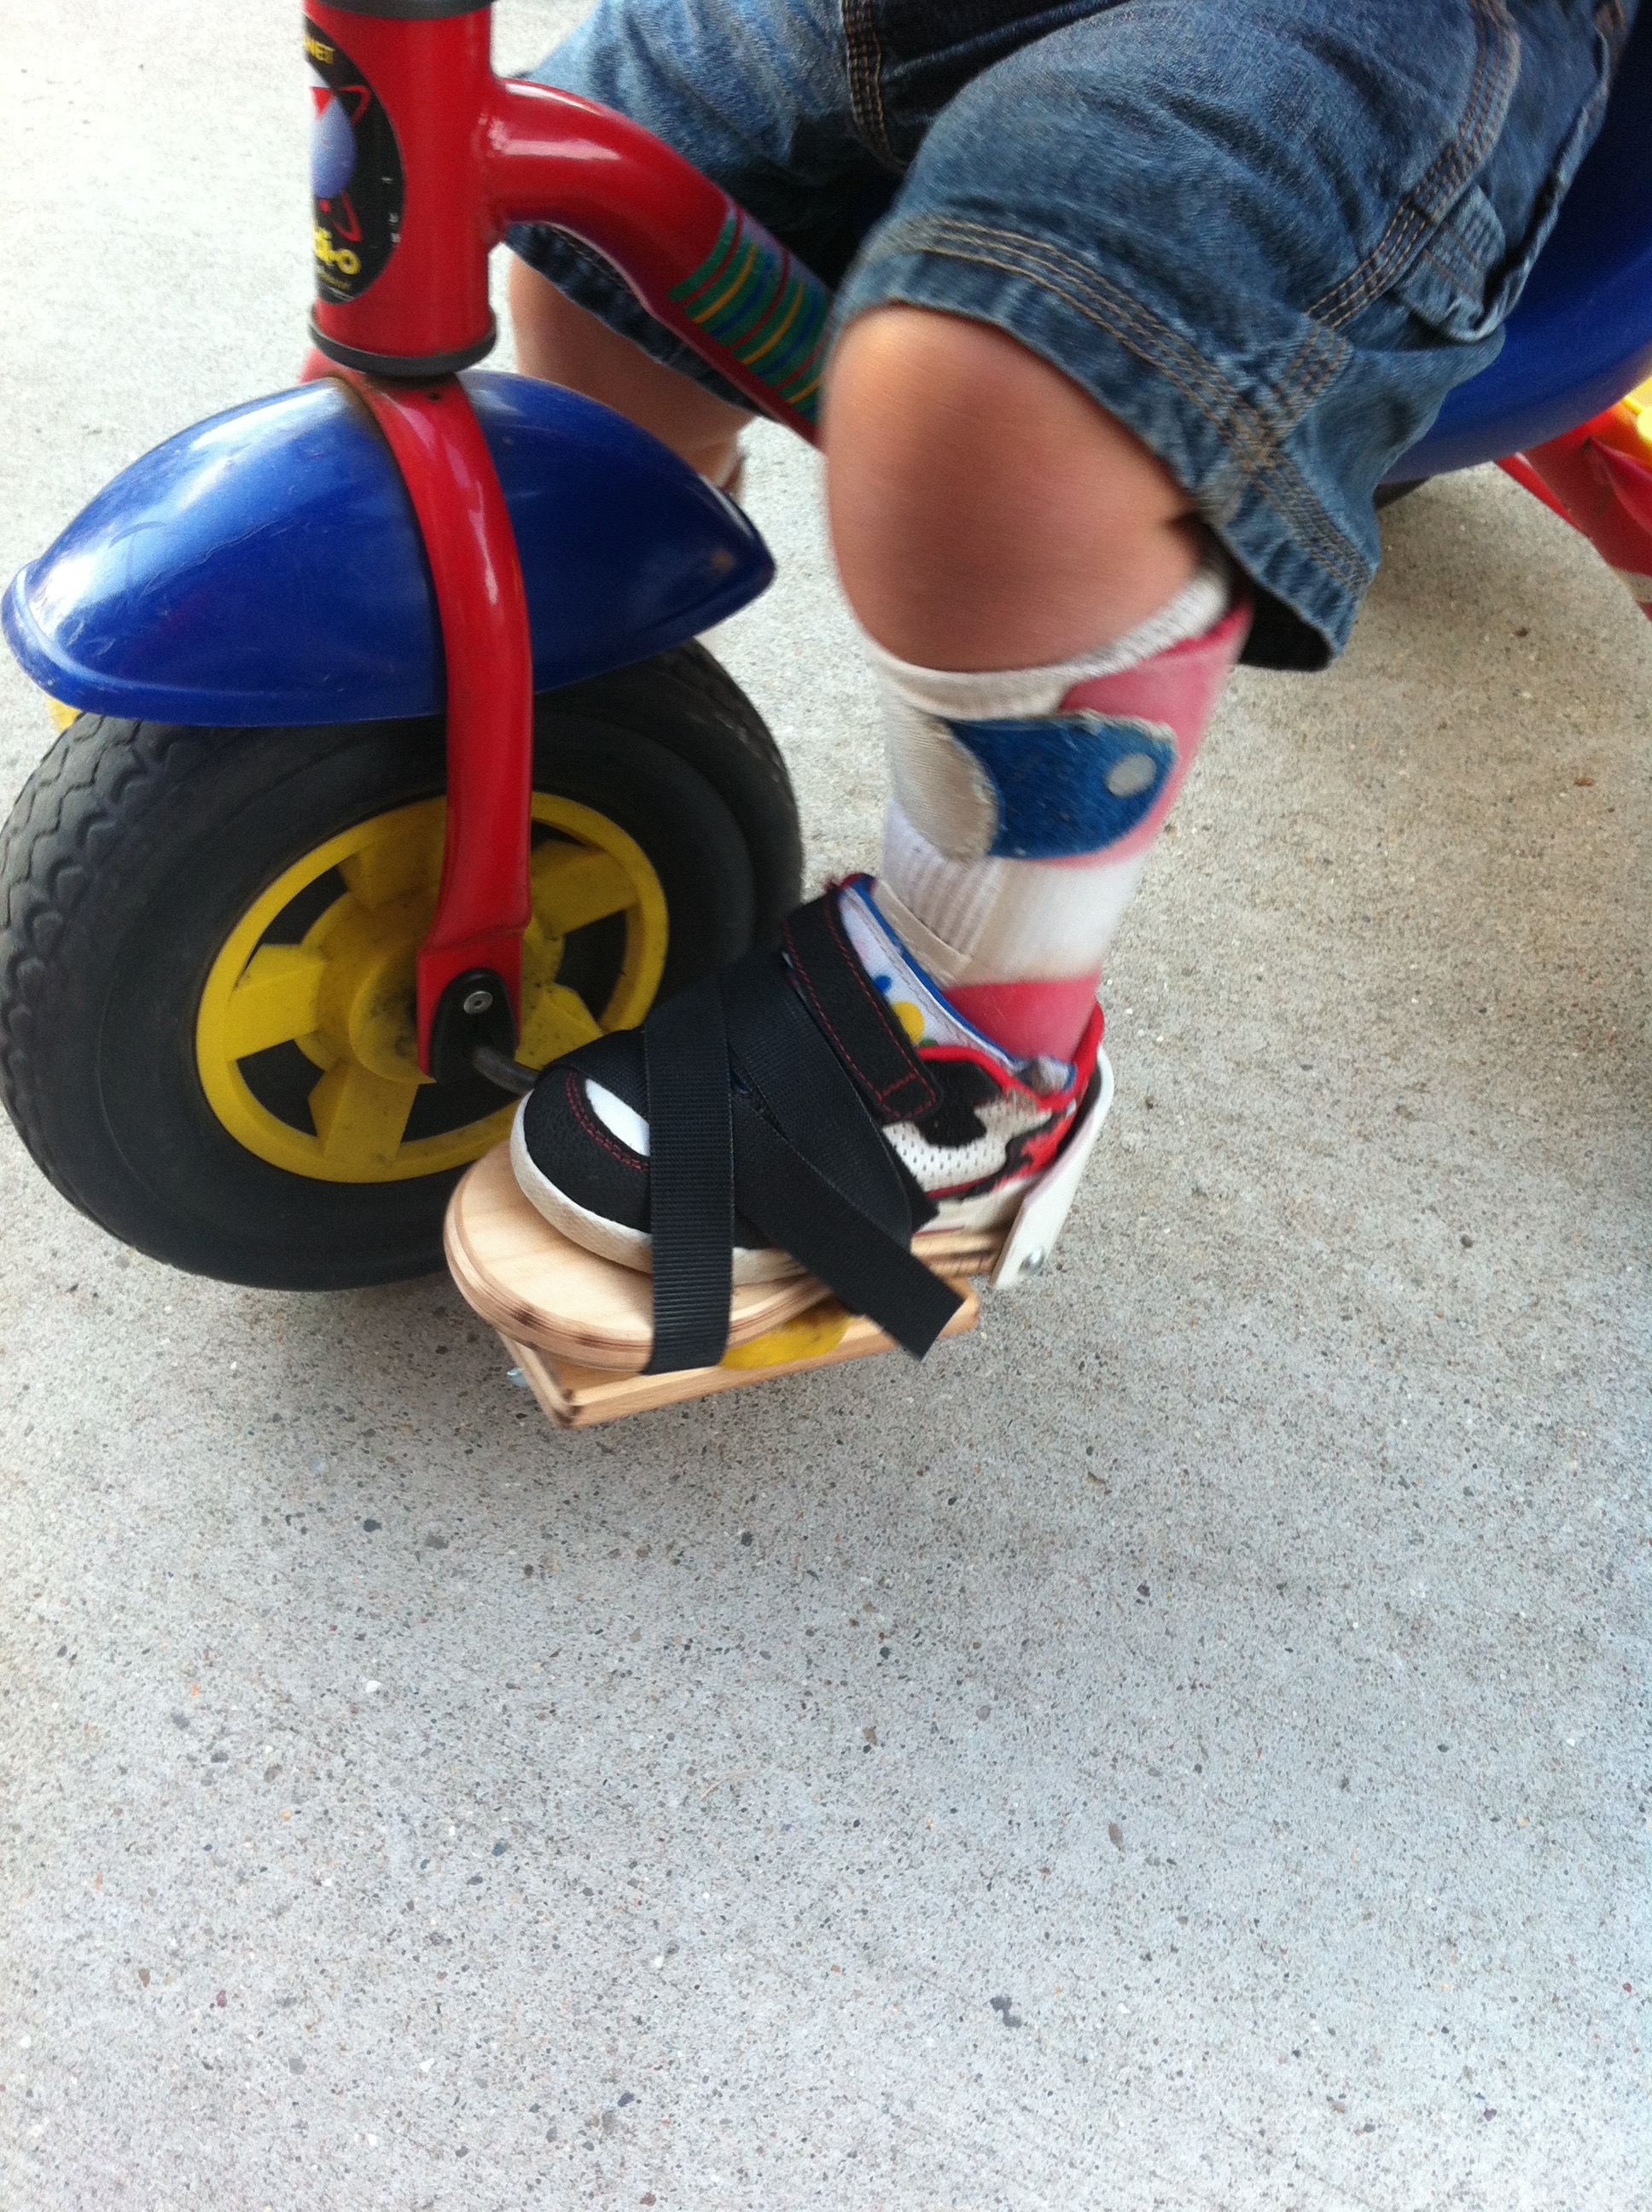 toe clips for children's bikes